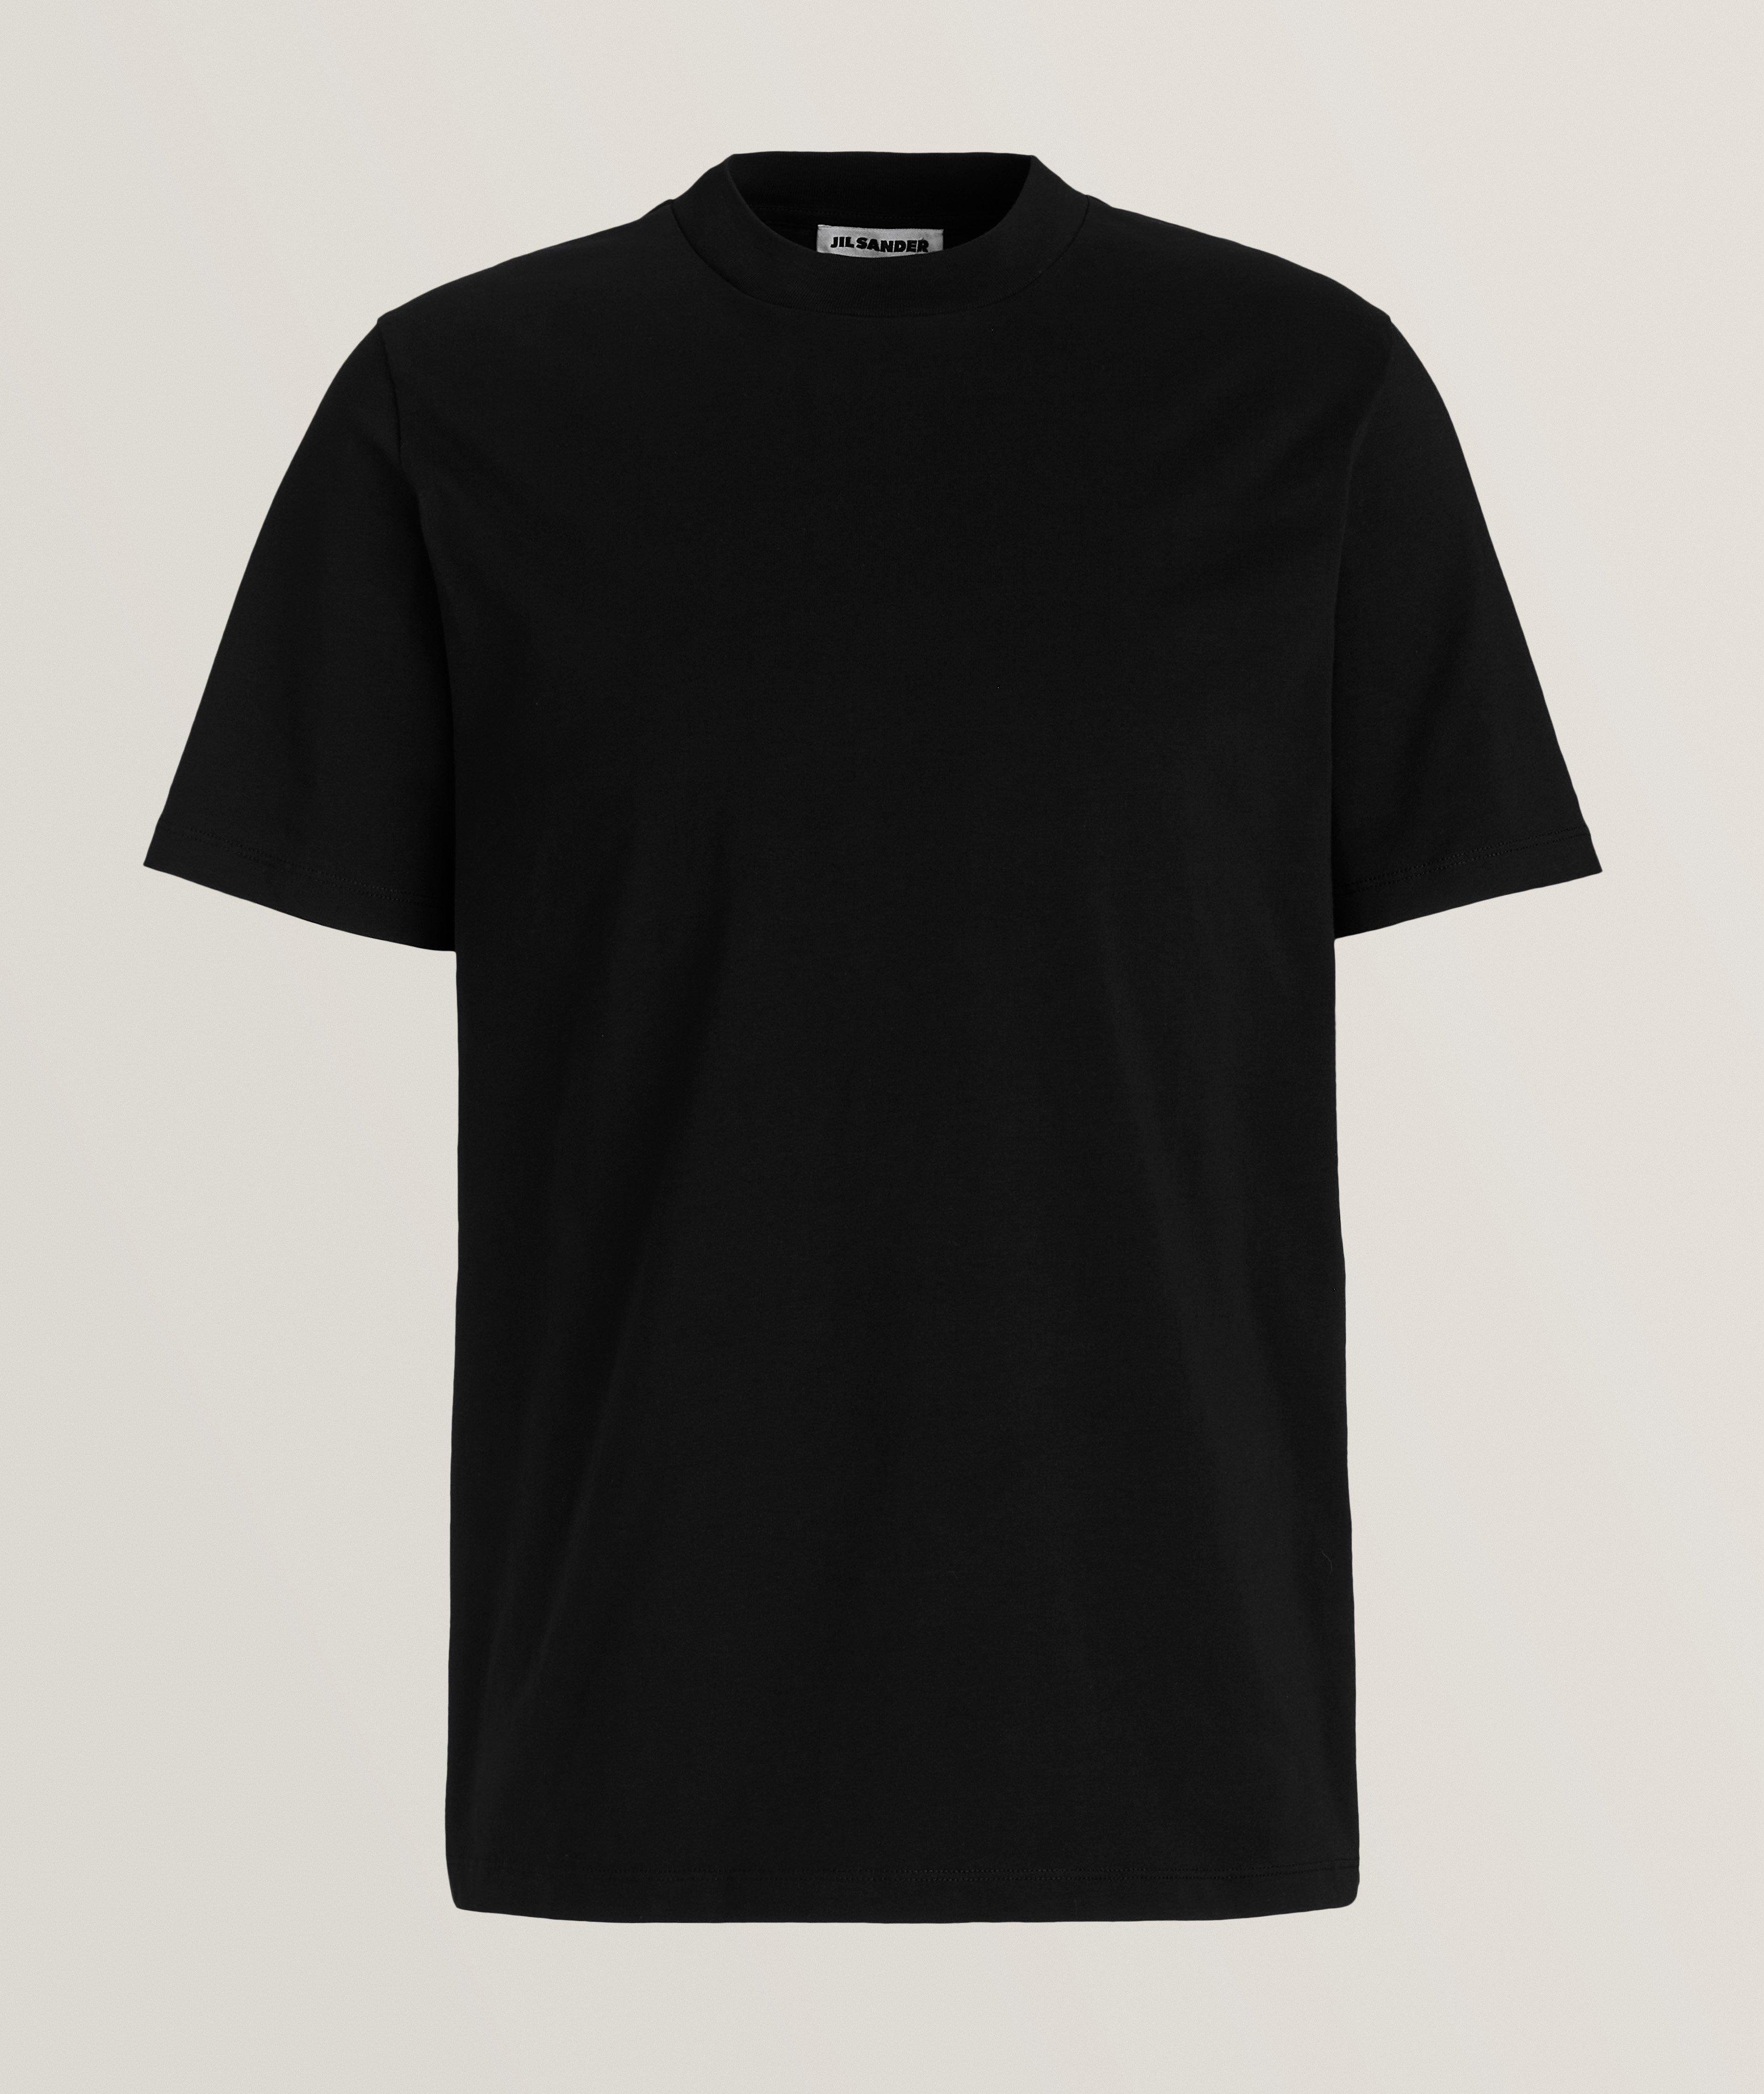 T-shirt de base en coton image 0